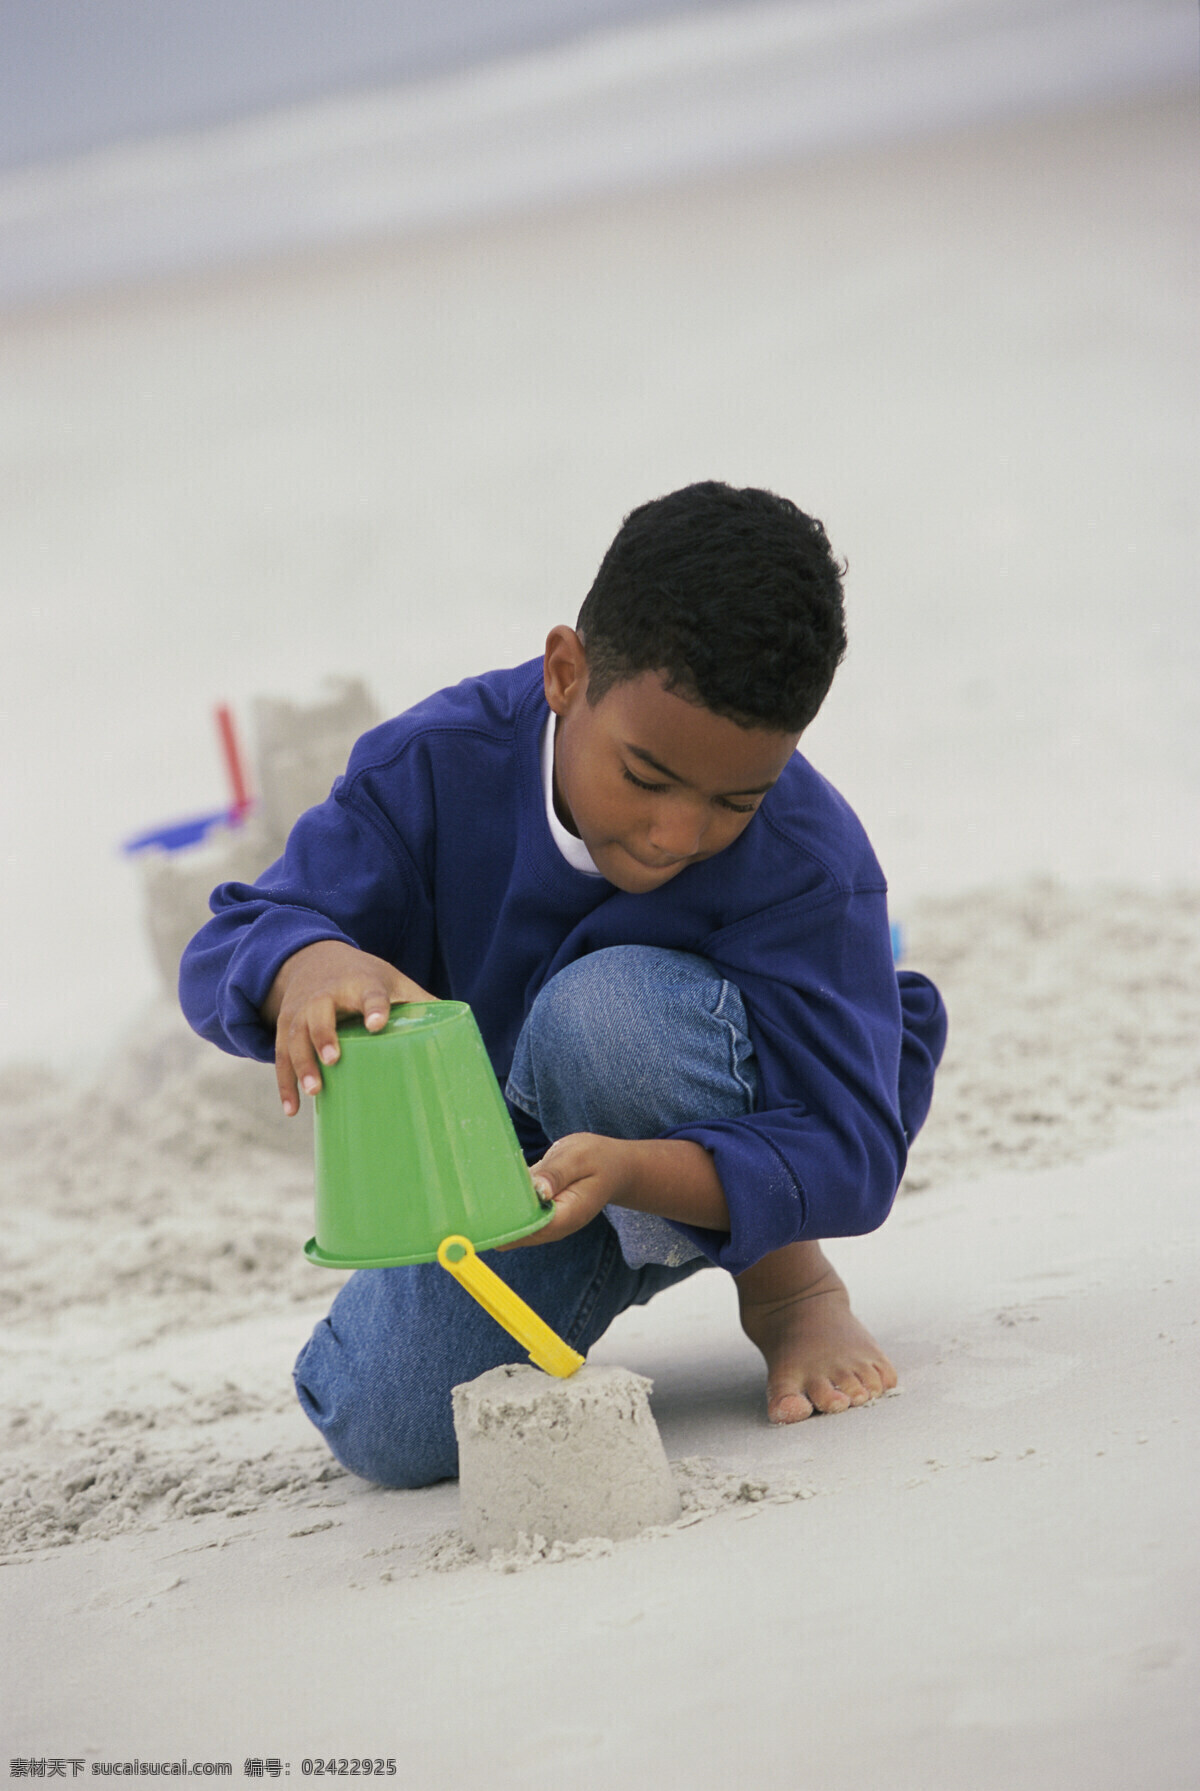 玩 沙雕 儿童 海边人物 沙滩 海滩 外国儿童 小孩 男孩 水桶 生活人物 人物图片